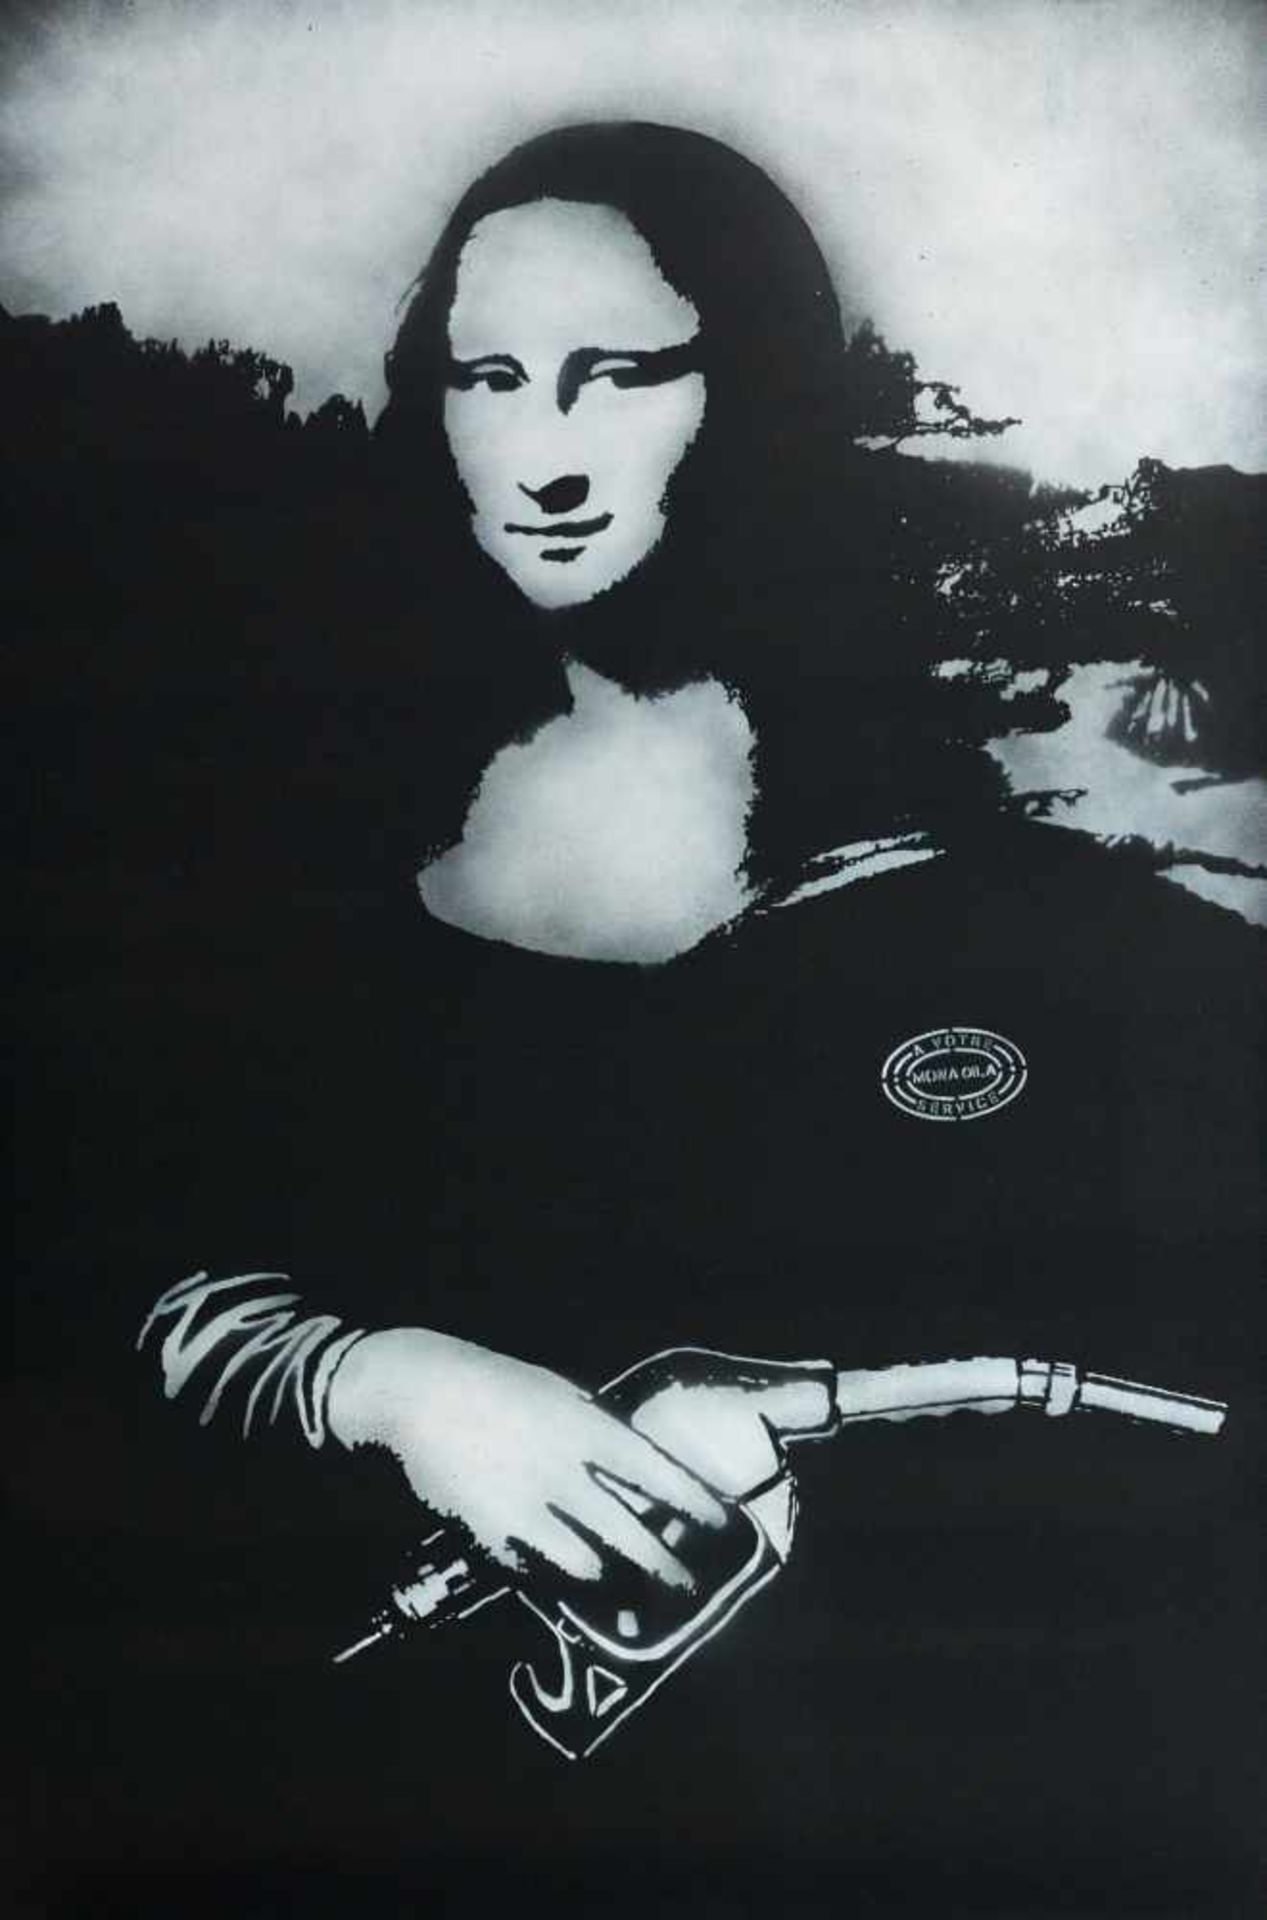 Goin1980 FranceMona Oila. 2013. Stencil (spray paint and acrylic) on canvas. 150 x 100cm. Titled,